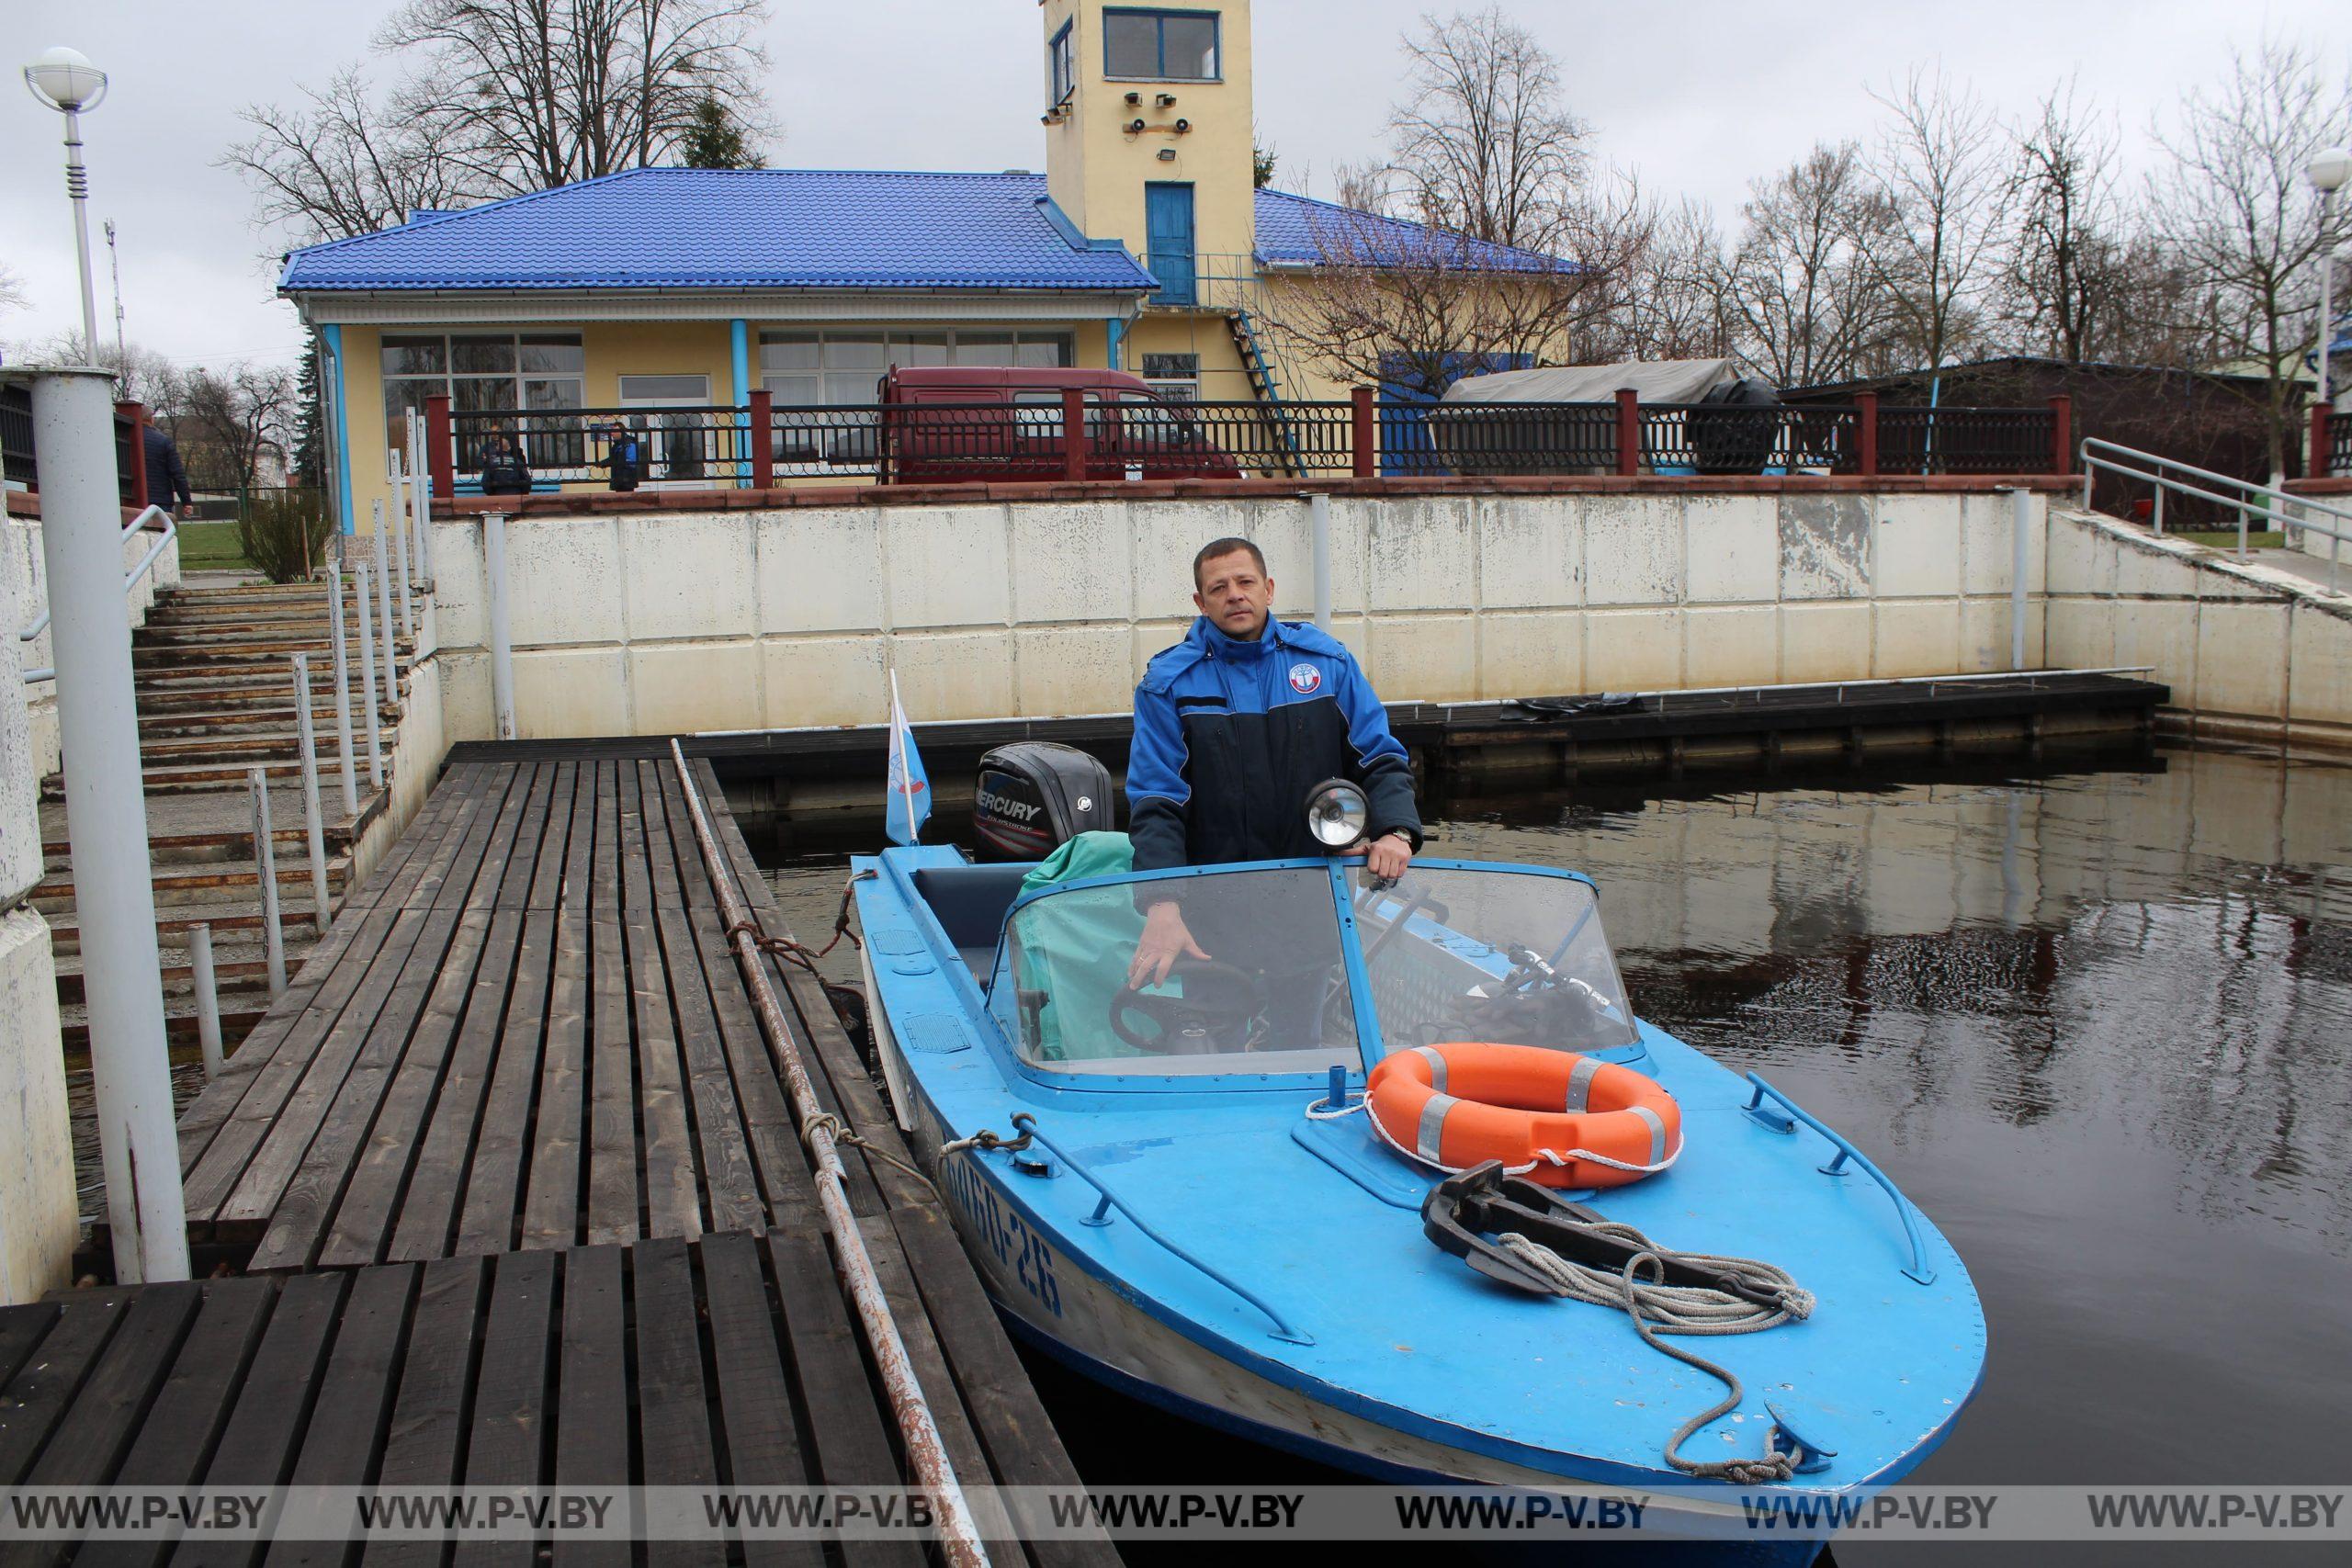 РГОО «Белорусское республиканское общество спасания на водах» празднует свой юбилей – 150-летие